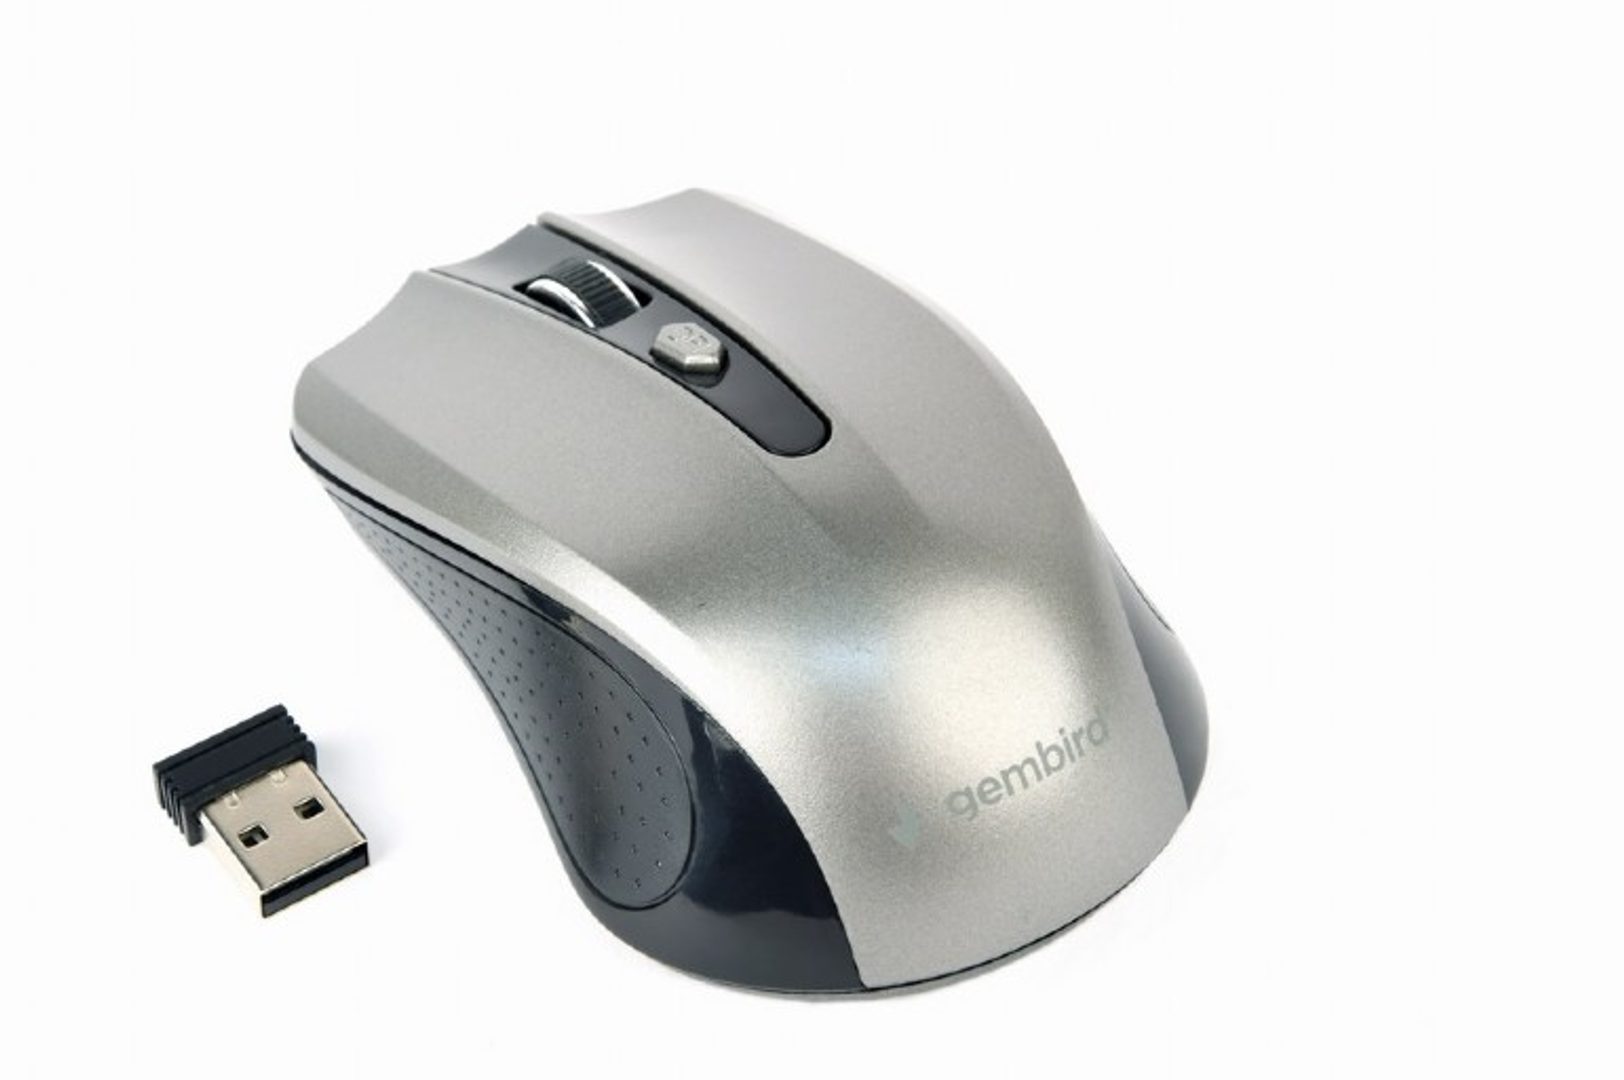 GSM-Market.cz - Počítače a doplňky, Myši, klávesnice, Myši bezdrátové, Myši  bezdrátové optické - Levné mobily